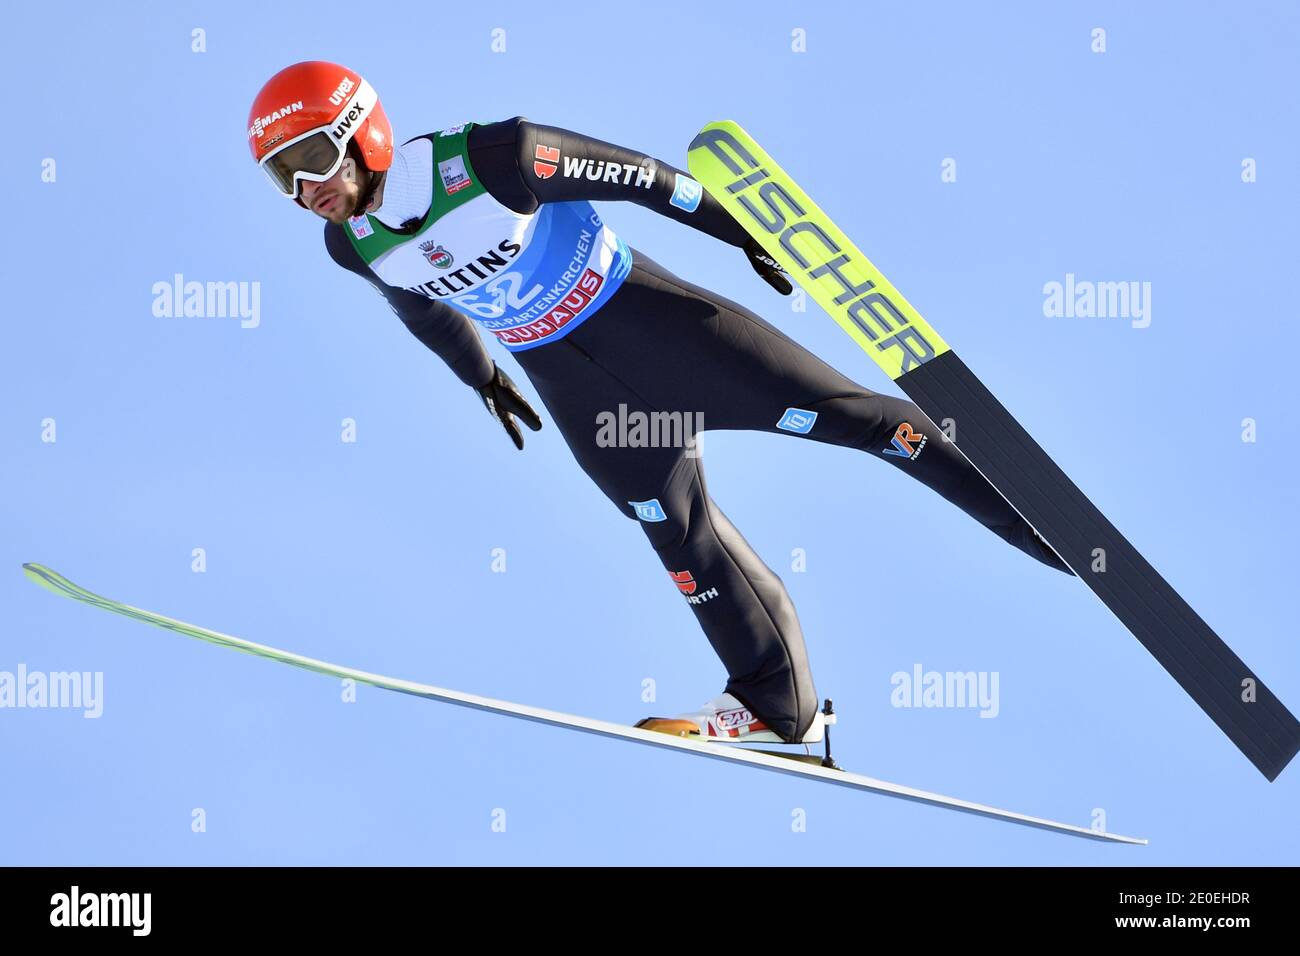 Markus EISENBICHLER (GER), jump, action. Ski jumping, 69th International Four Hills Tournament 2020/21. Qualification for the New Year's event in Garmisch Partenkirchen on December 31, 2020. | usage worldwide Stock Photo